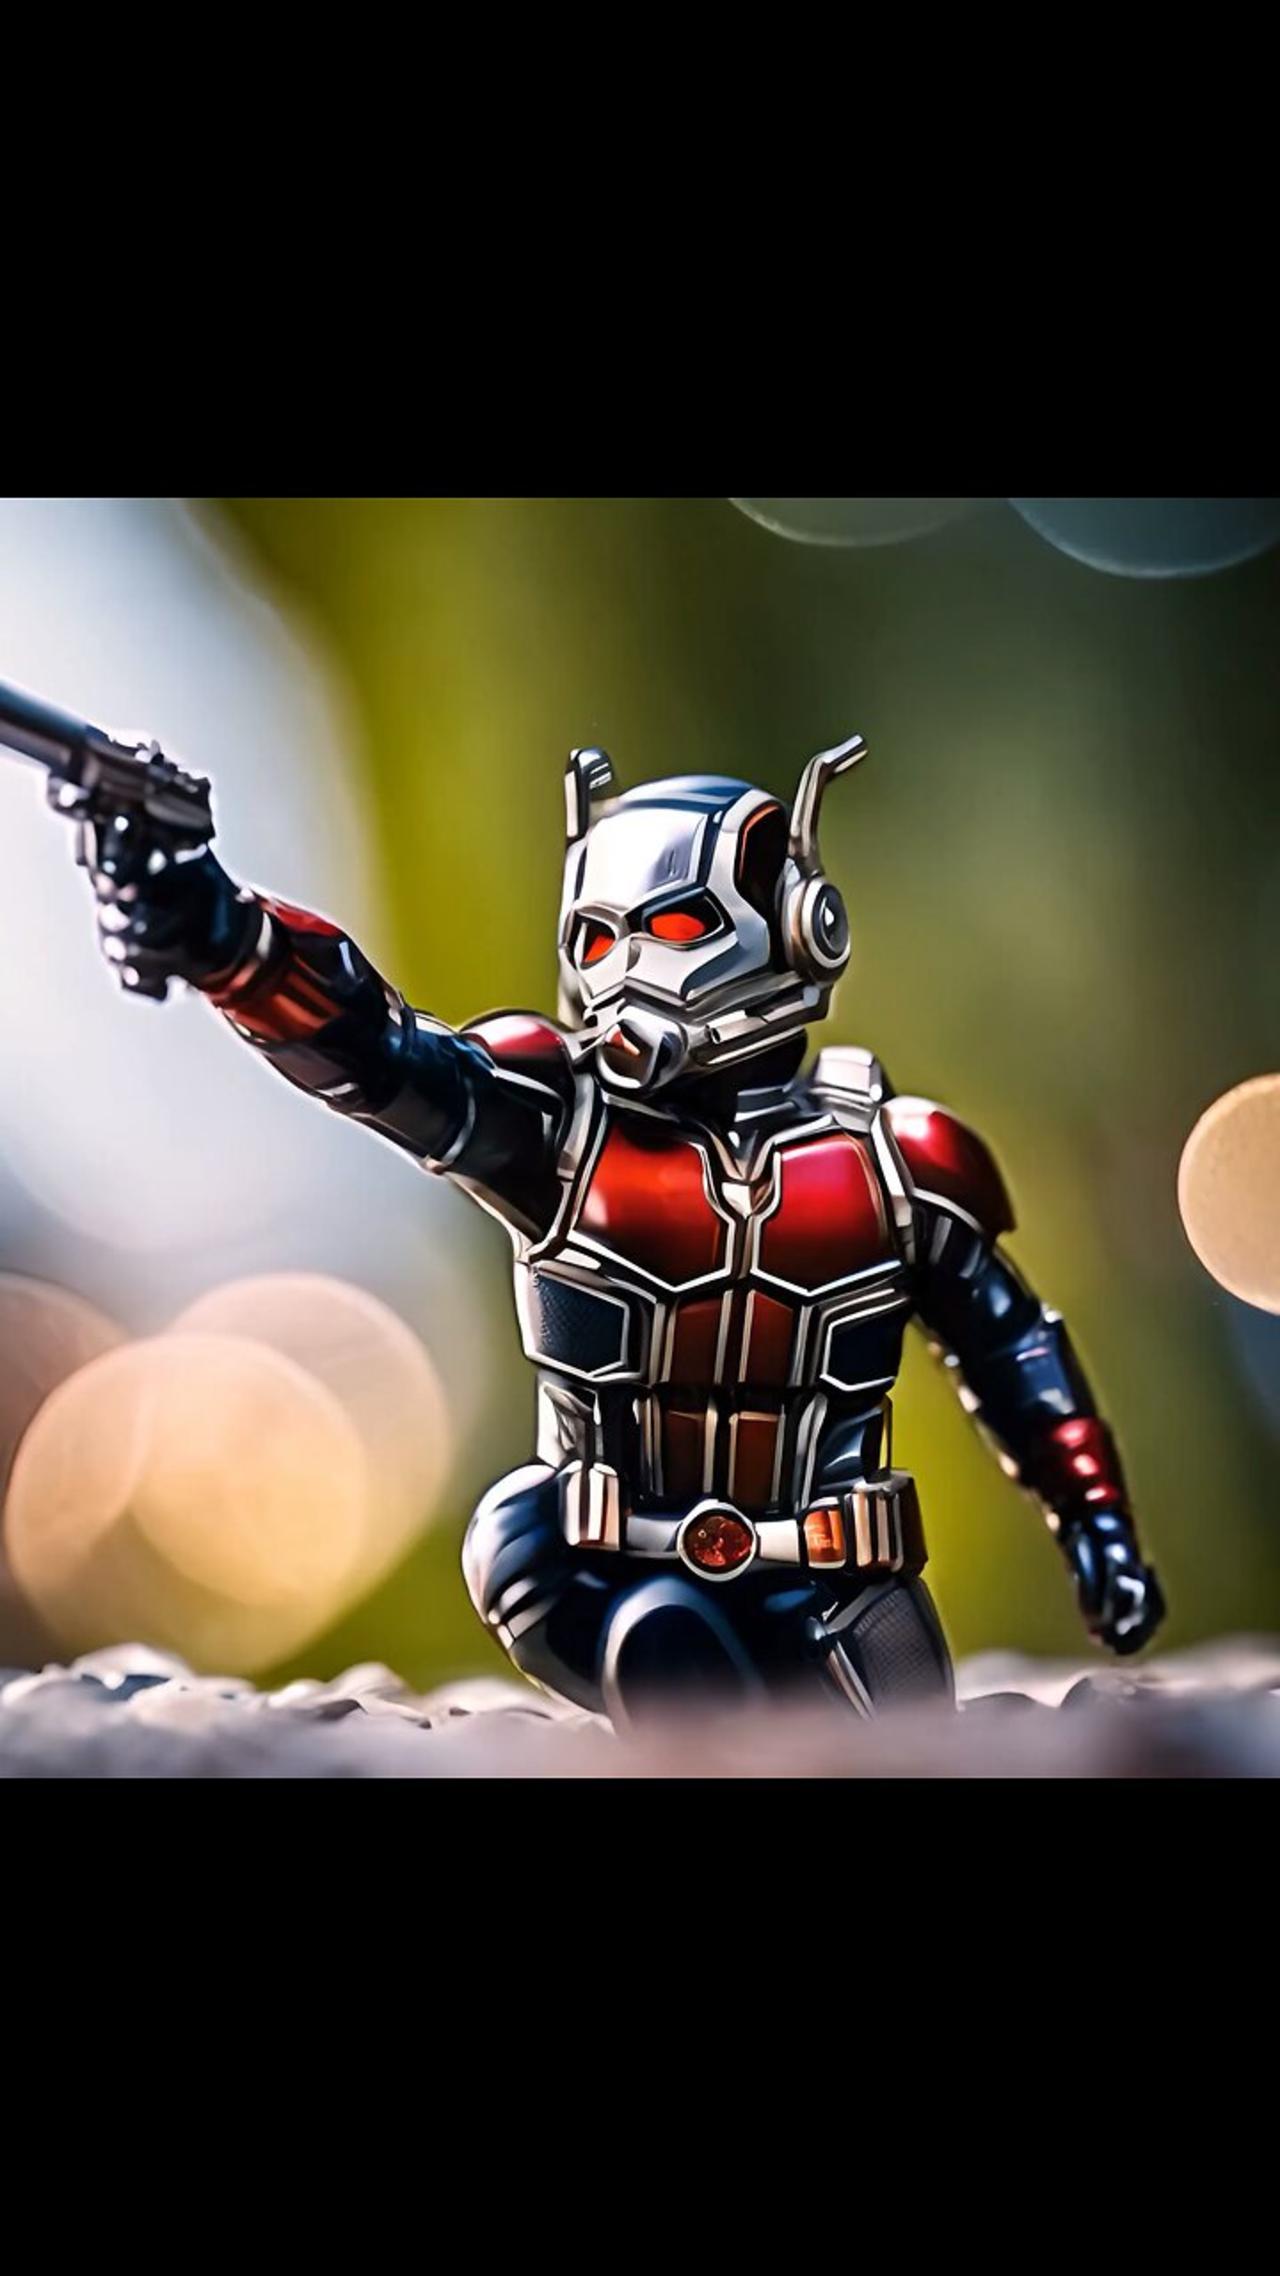 Ant-Man, Scott Lang #AntMan #ScottLang #MarvelHero